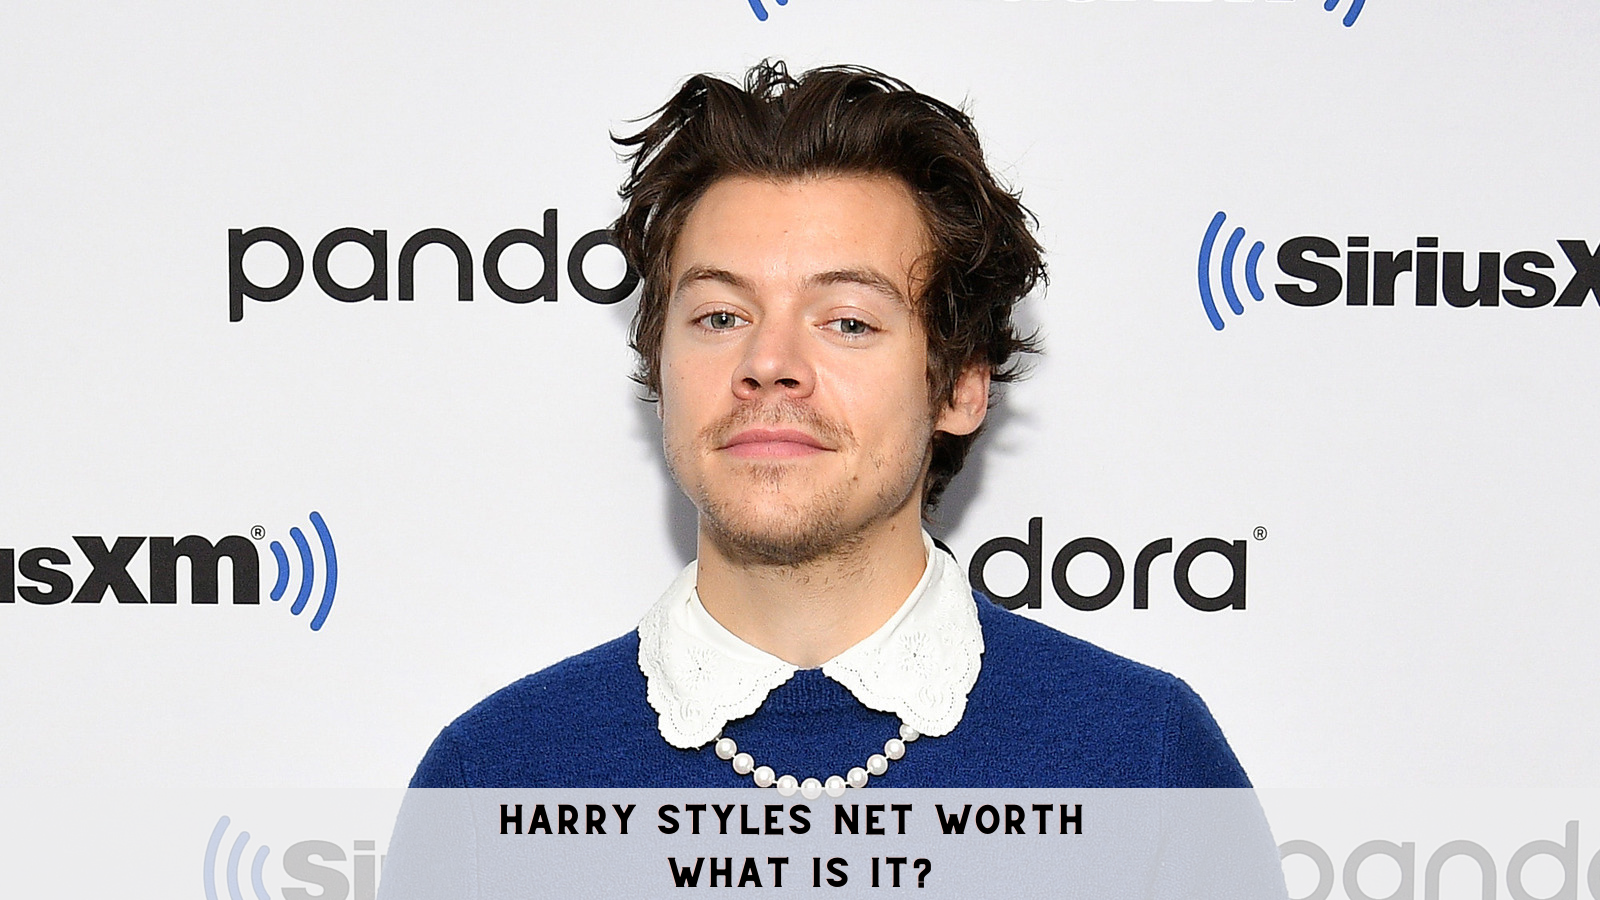 Harry Styles Net Worth- What is it?